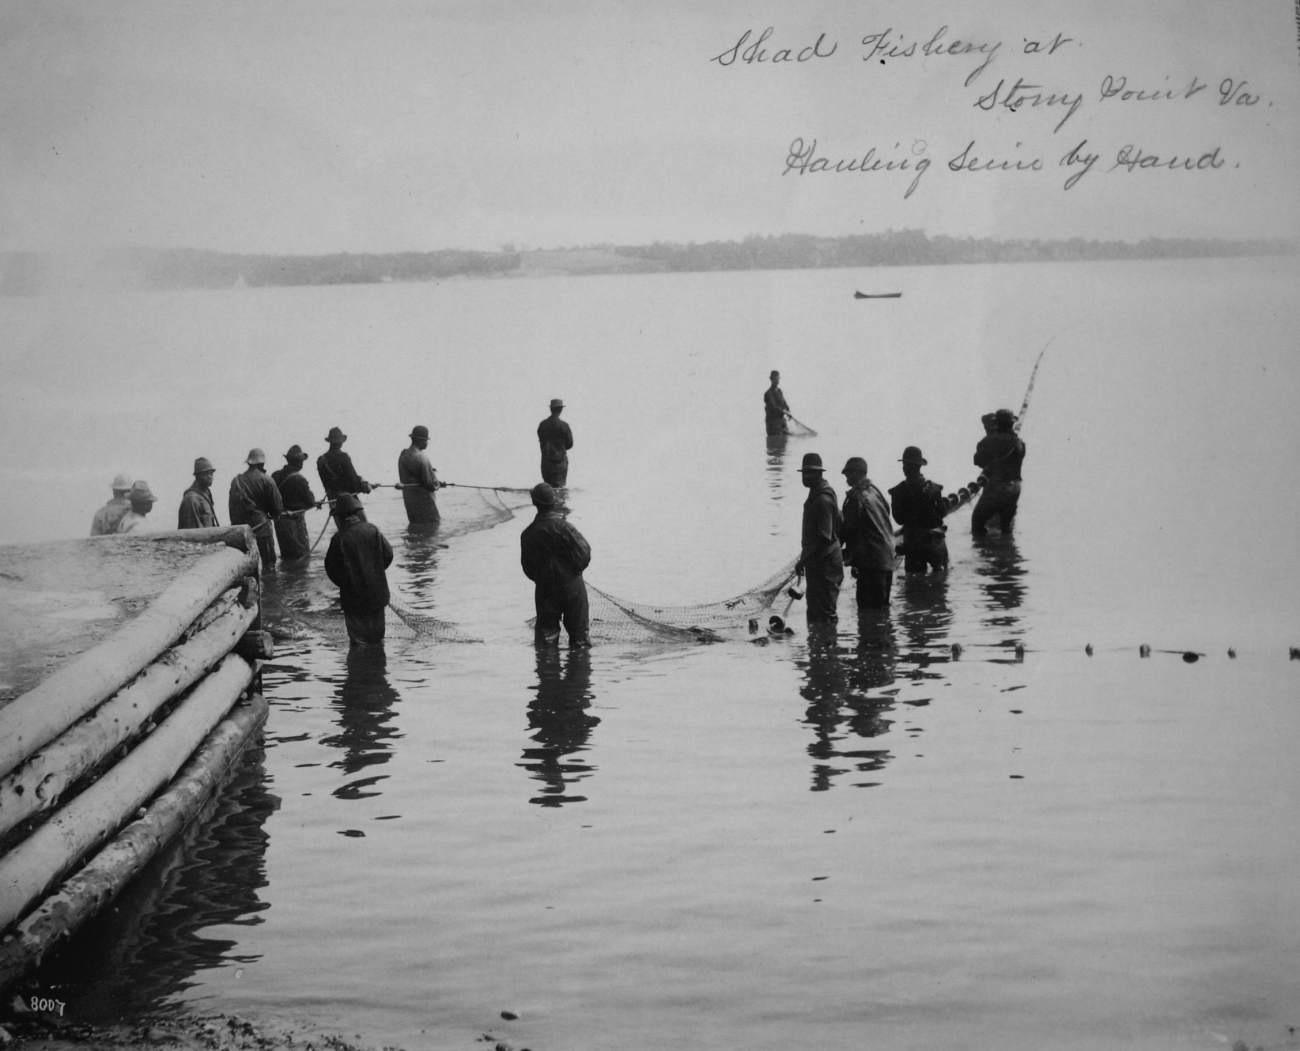 Shad fishery at Stony Point, VA, hauling seine by hand